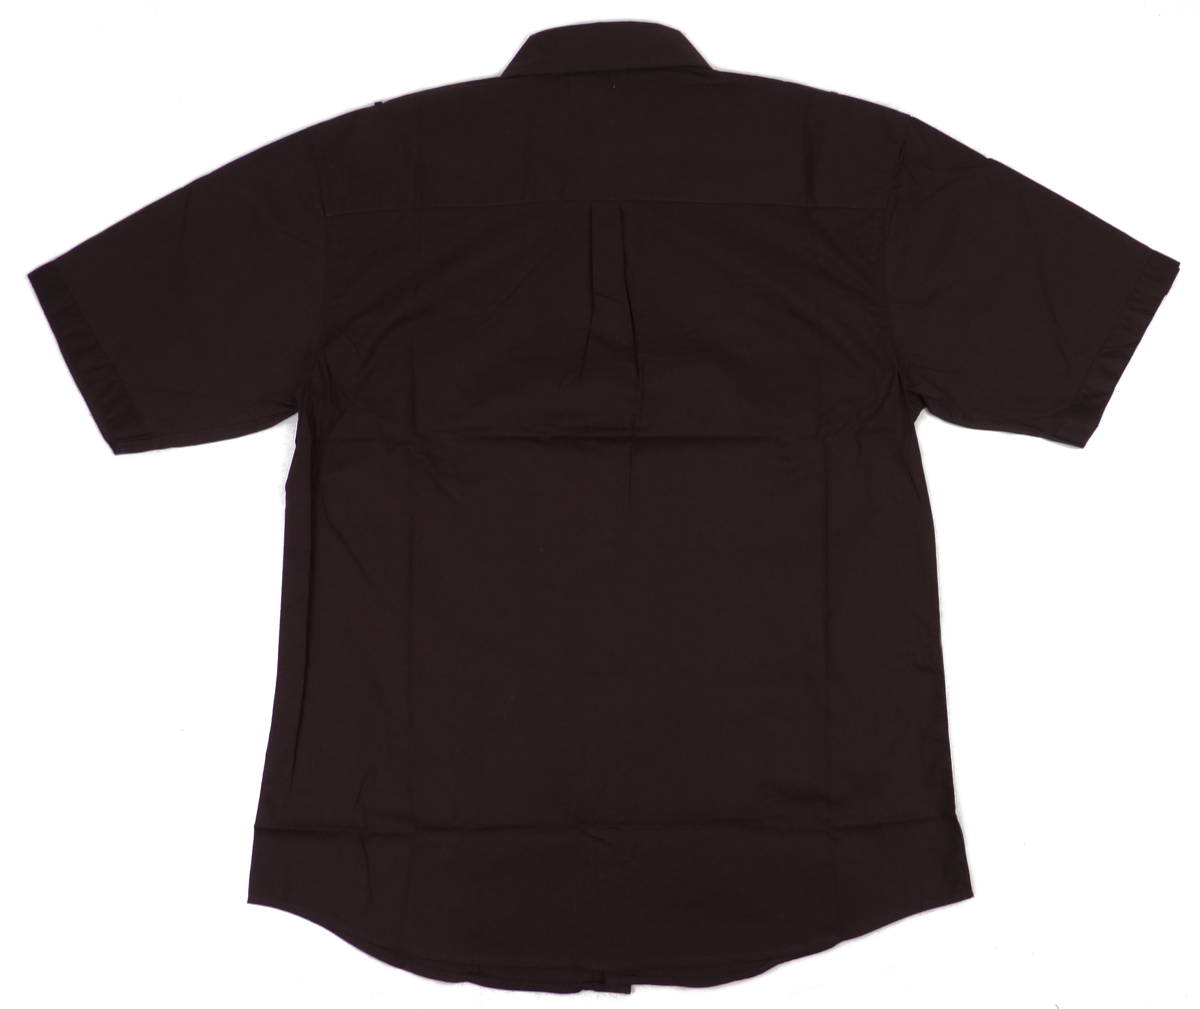 KNOCK OUT ノックアウト プレーンタイプ 半袖ボタンシャツ（ブラウン）(XL) [並行輸入品]